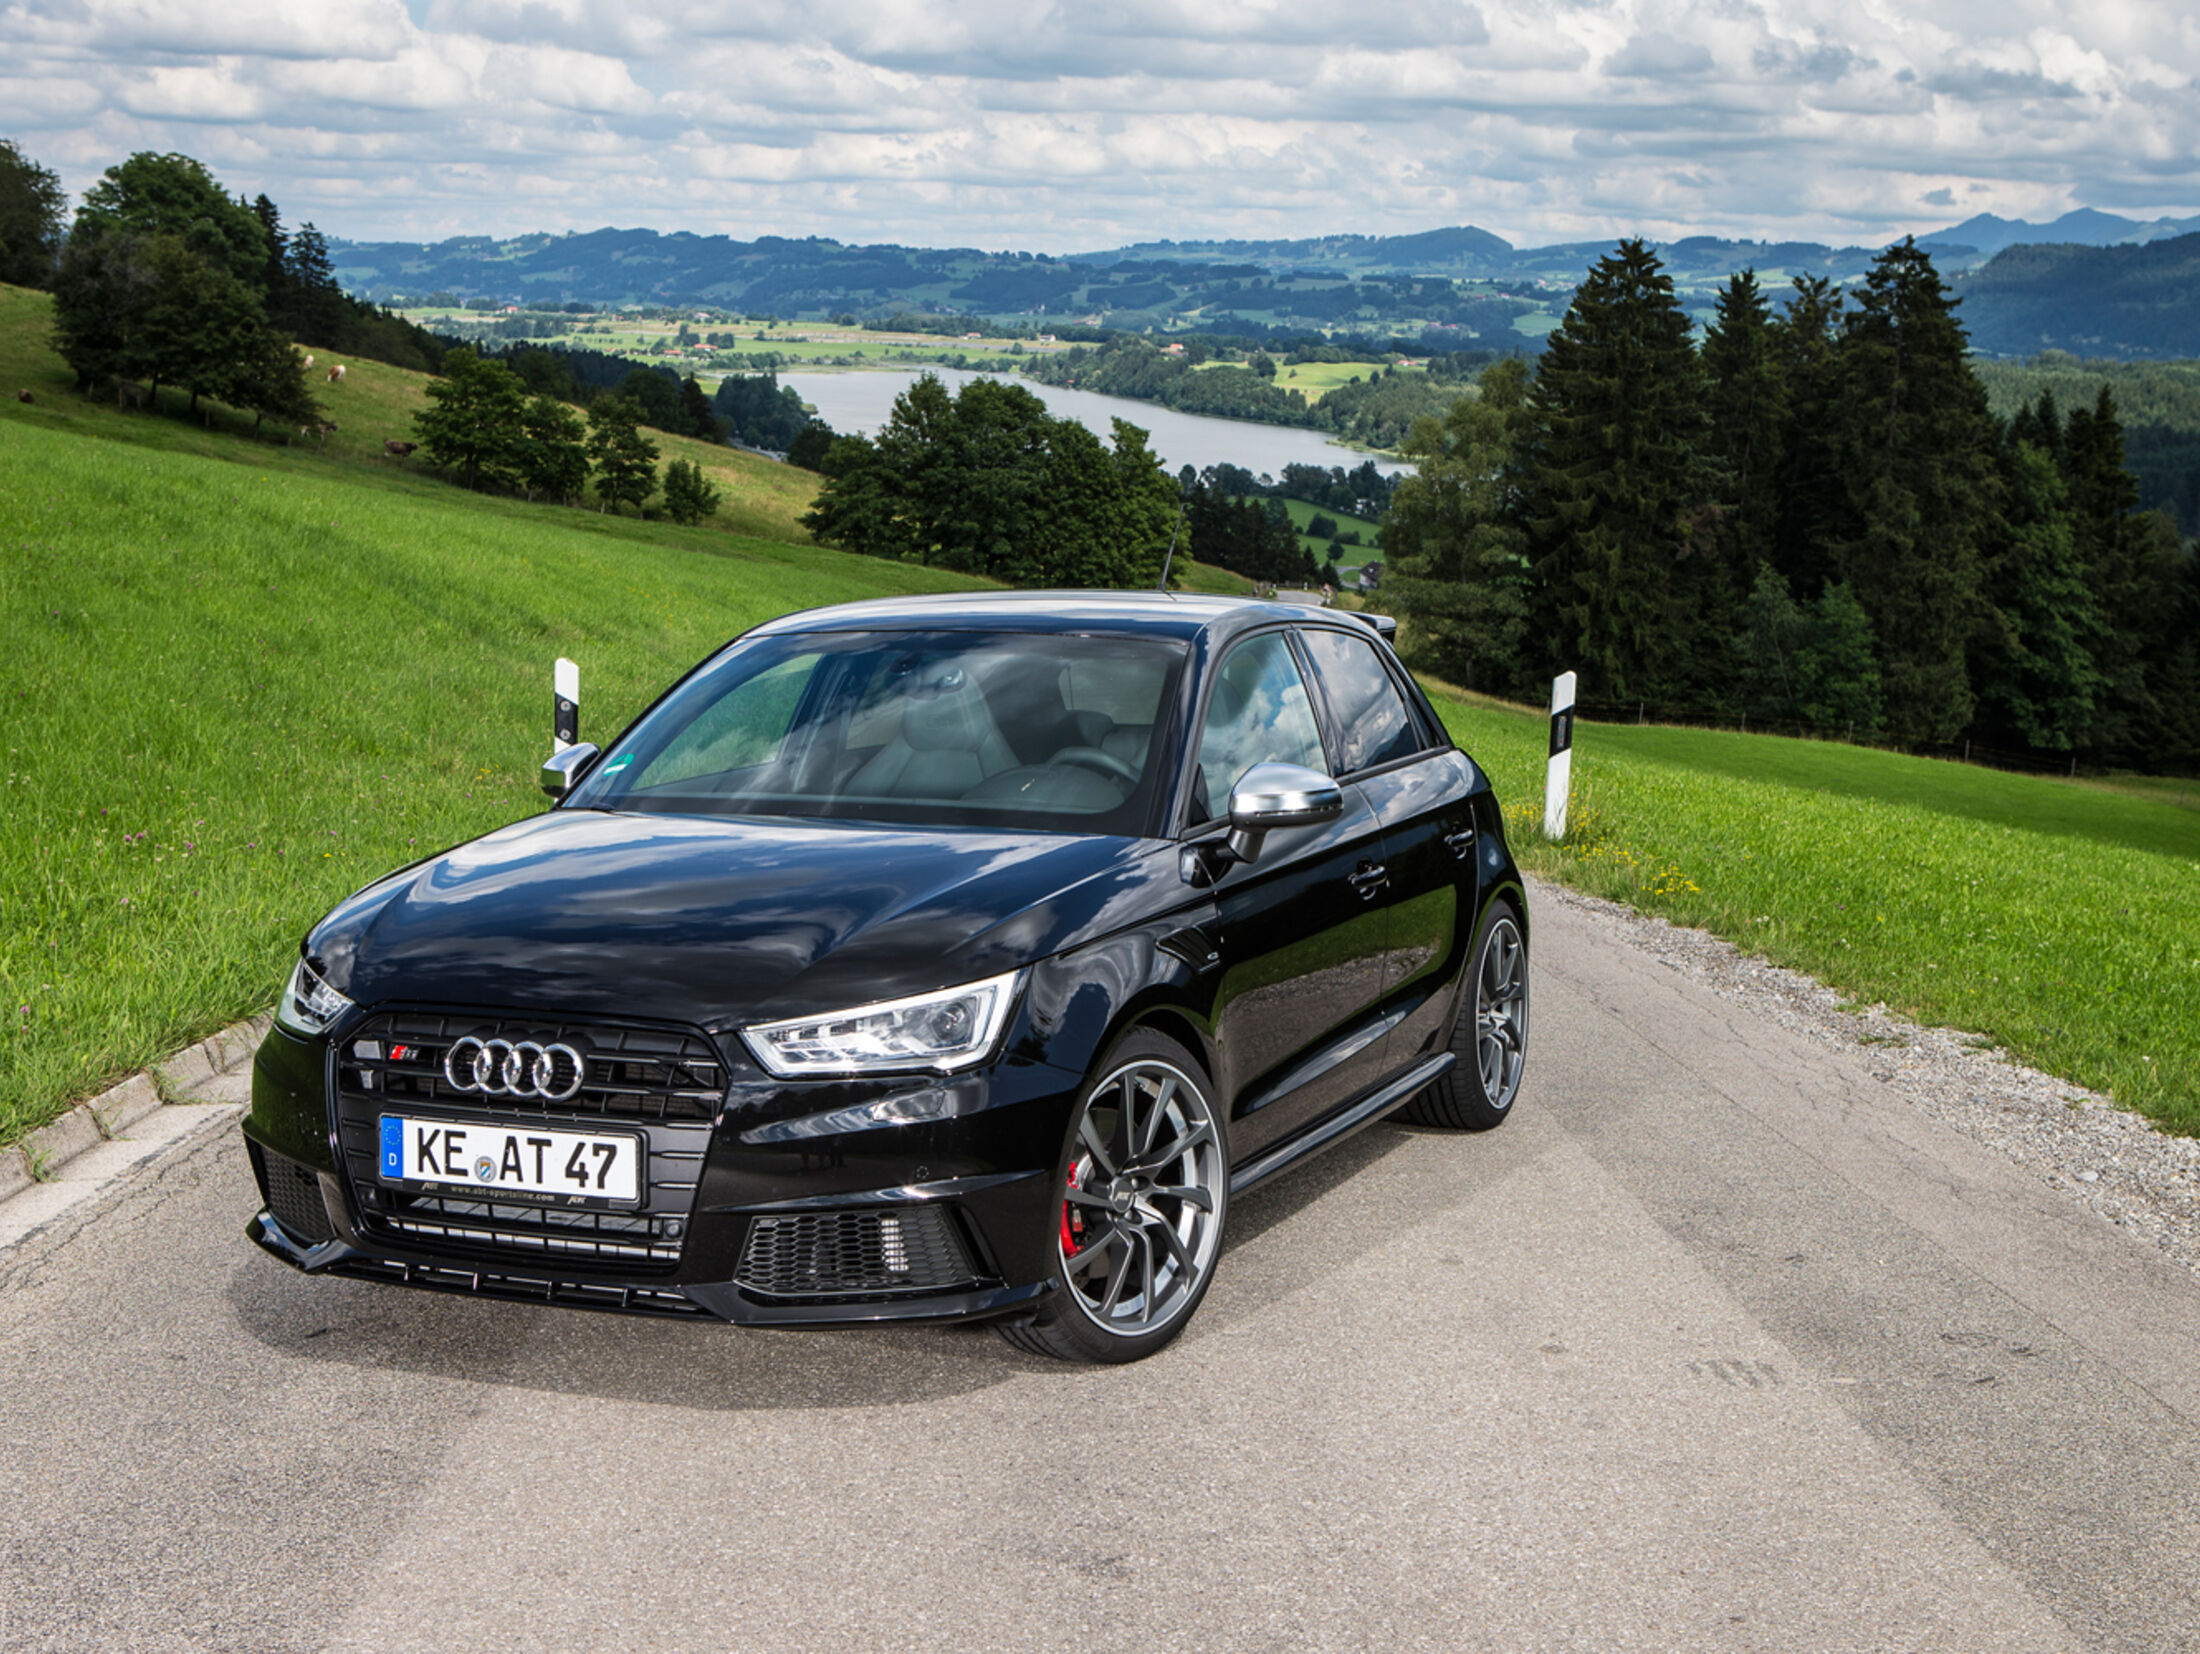 https://imgr1.auto-motor-und-sport.de/Abt-Audi-S1-Kleinwagen-Tuning-jsonLd4x3-a4554db2-799818.jpg